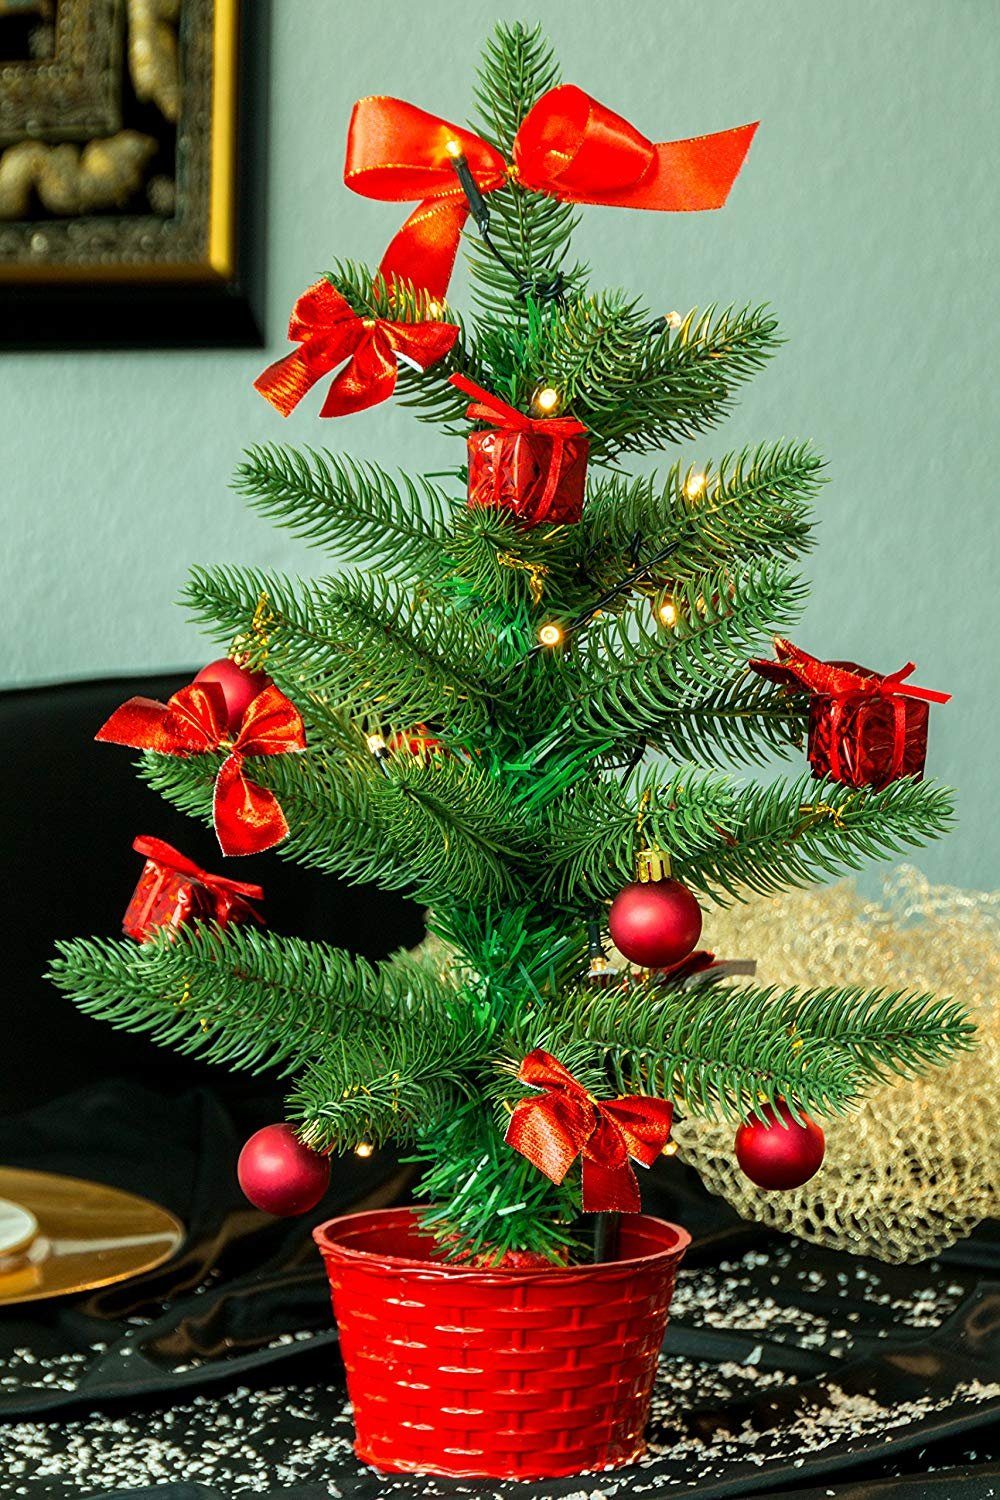 45 Season Season x mit Best Weihnachtsbaum 20 Dekoration, 45cm, x Best SA119, 20 circa" Plastik, grün, Künstlicher Weihnachtsbaum LED cm